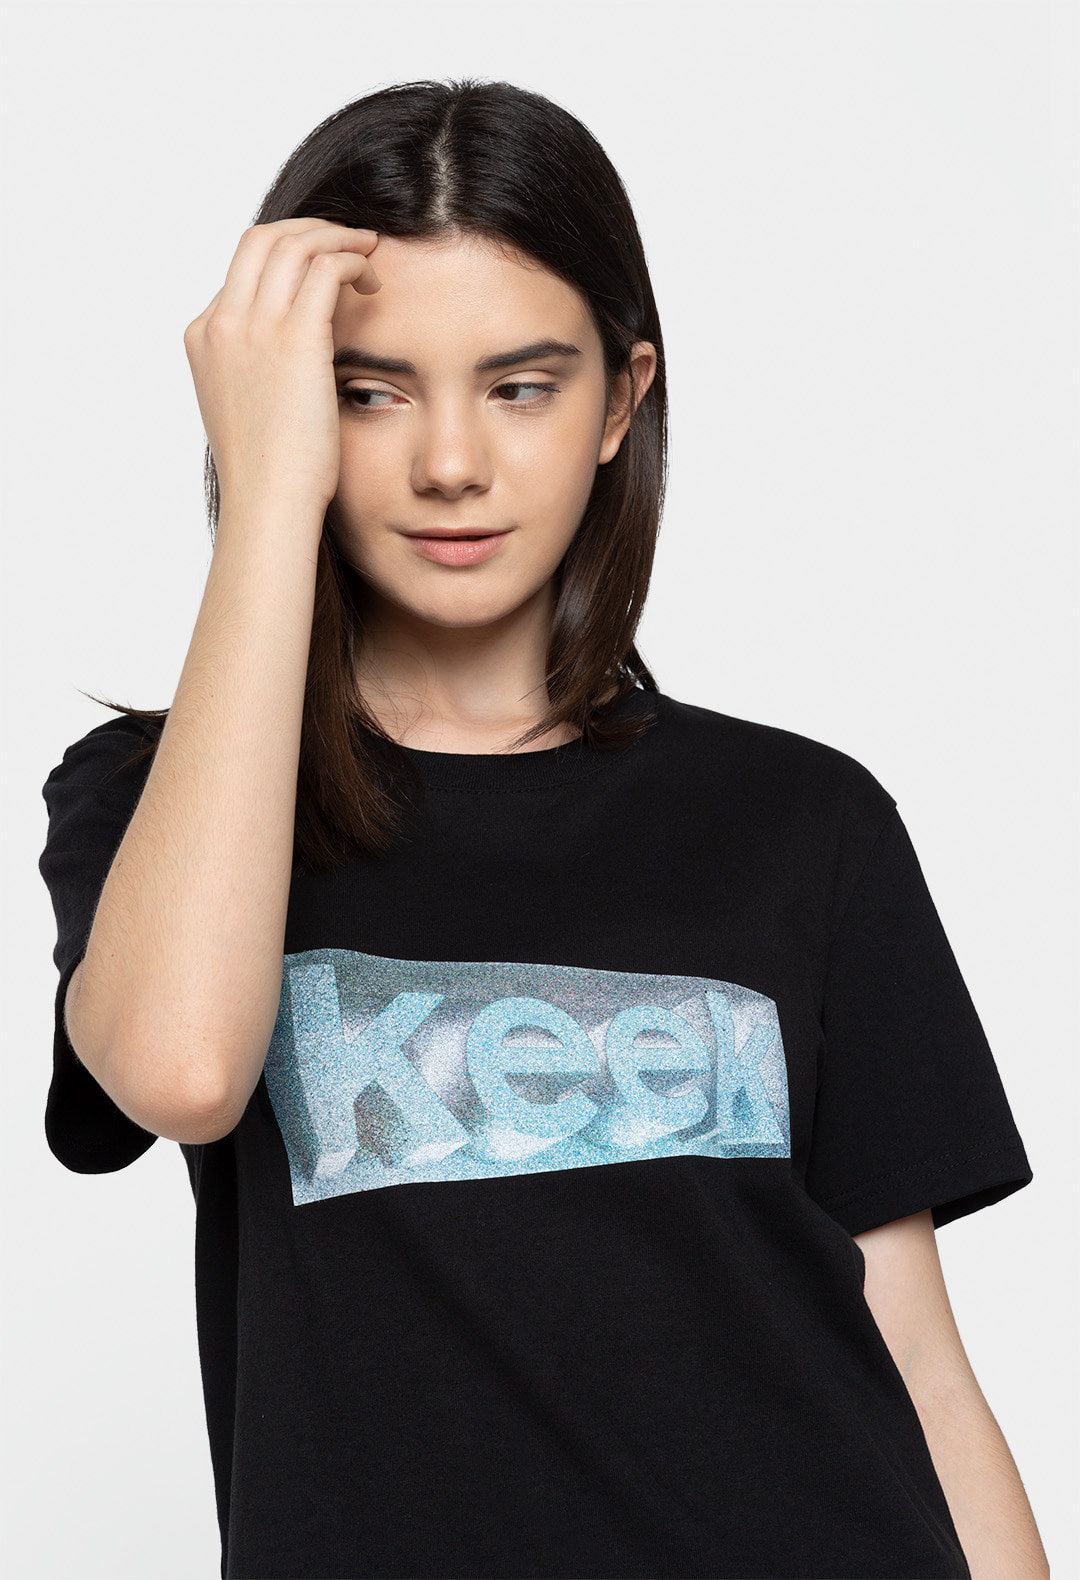 keek [Unisex] Crack T-shirts - Black 스트릿패션 유니섹스브랜드 커플시밀러룩 남자쇼핑몰 여성의류쇼핑몰 후드티 힙색